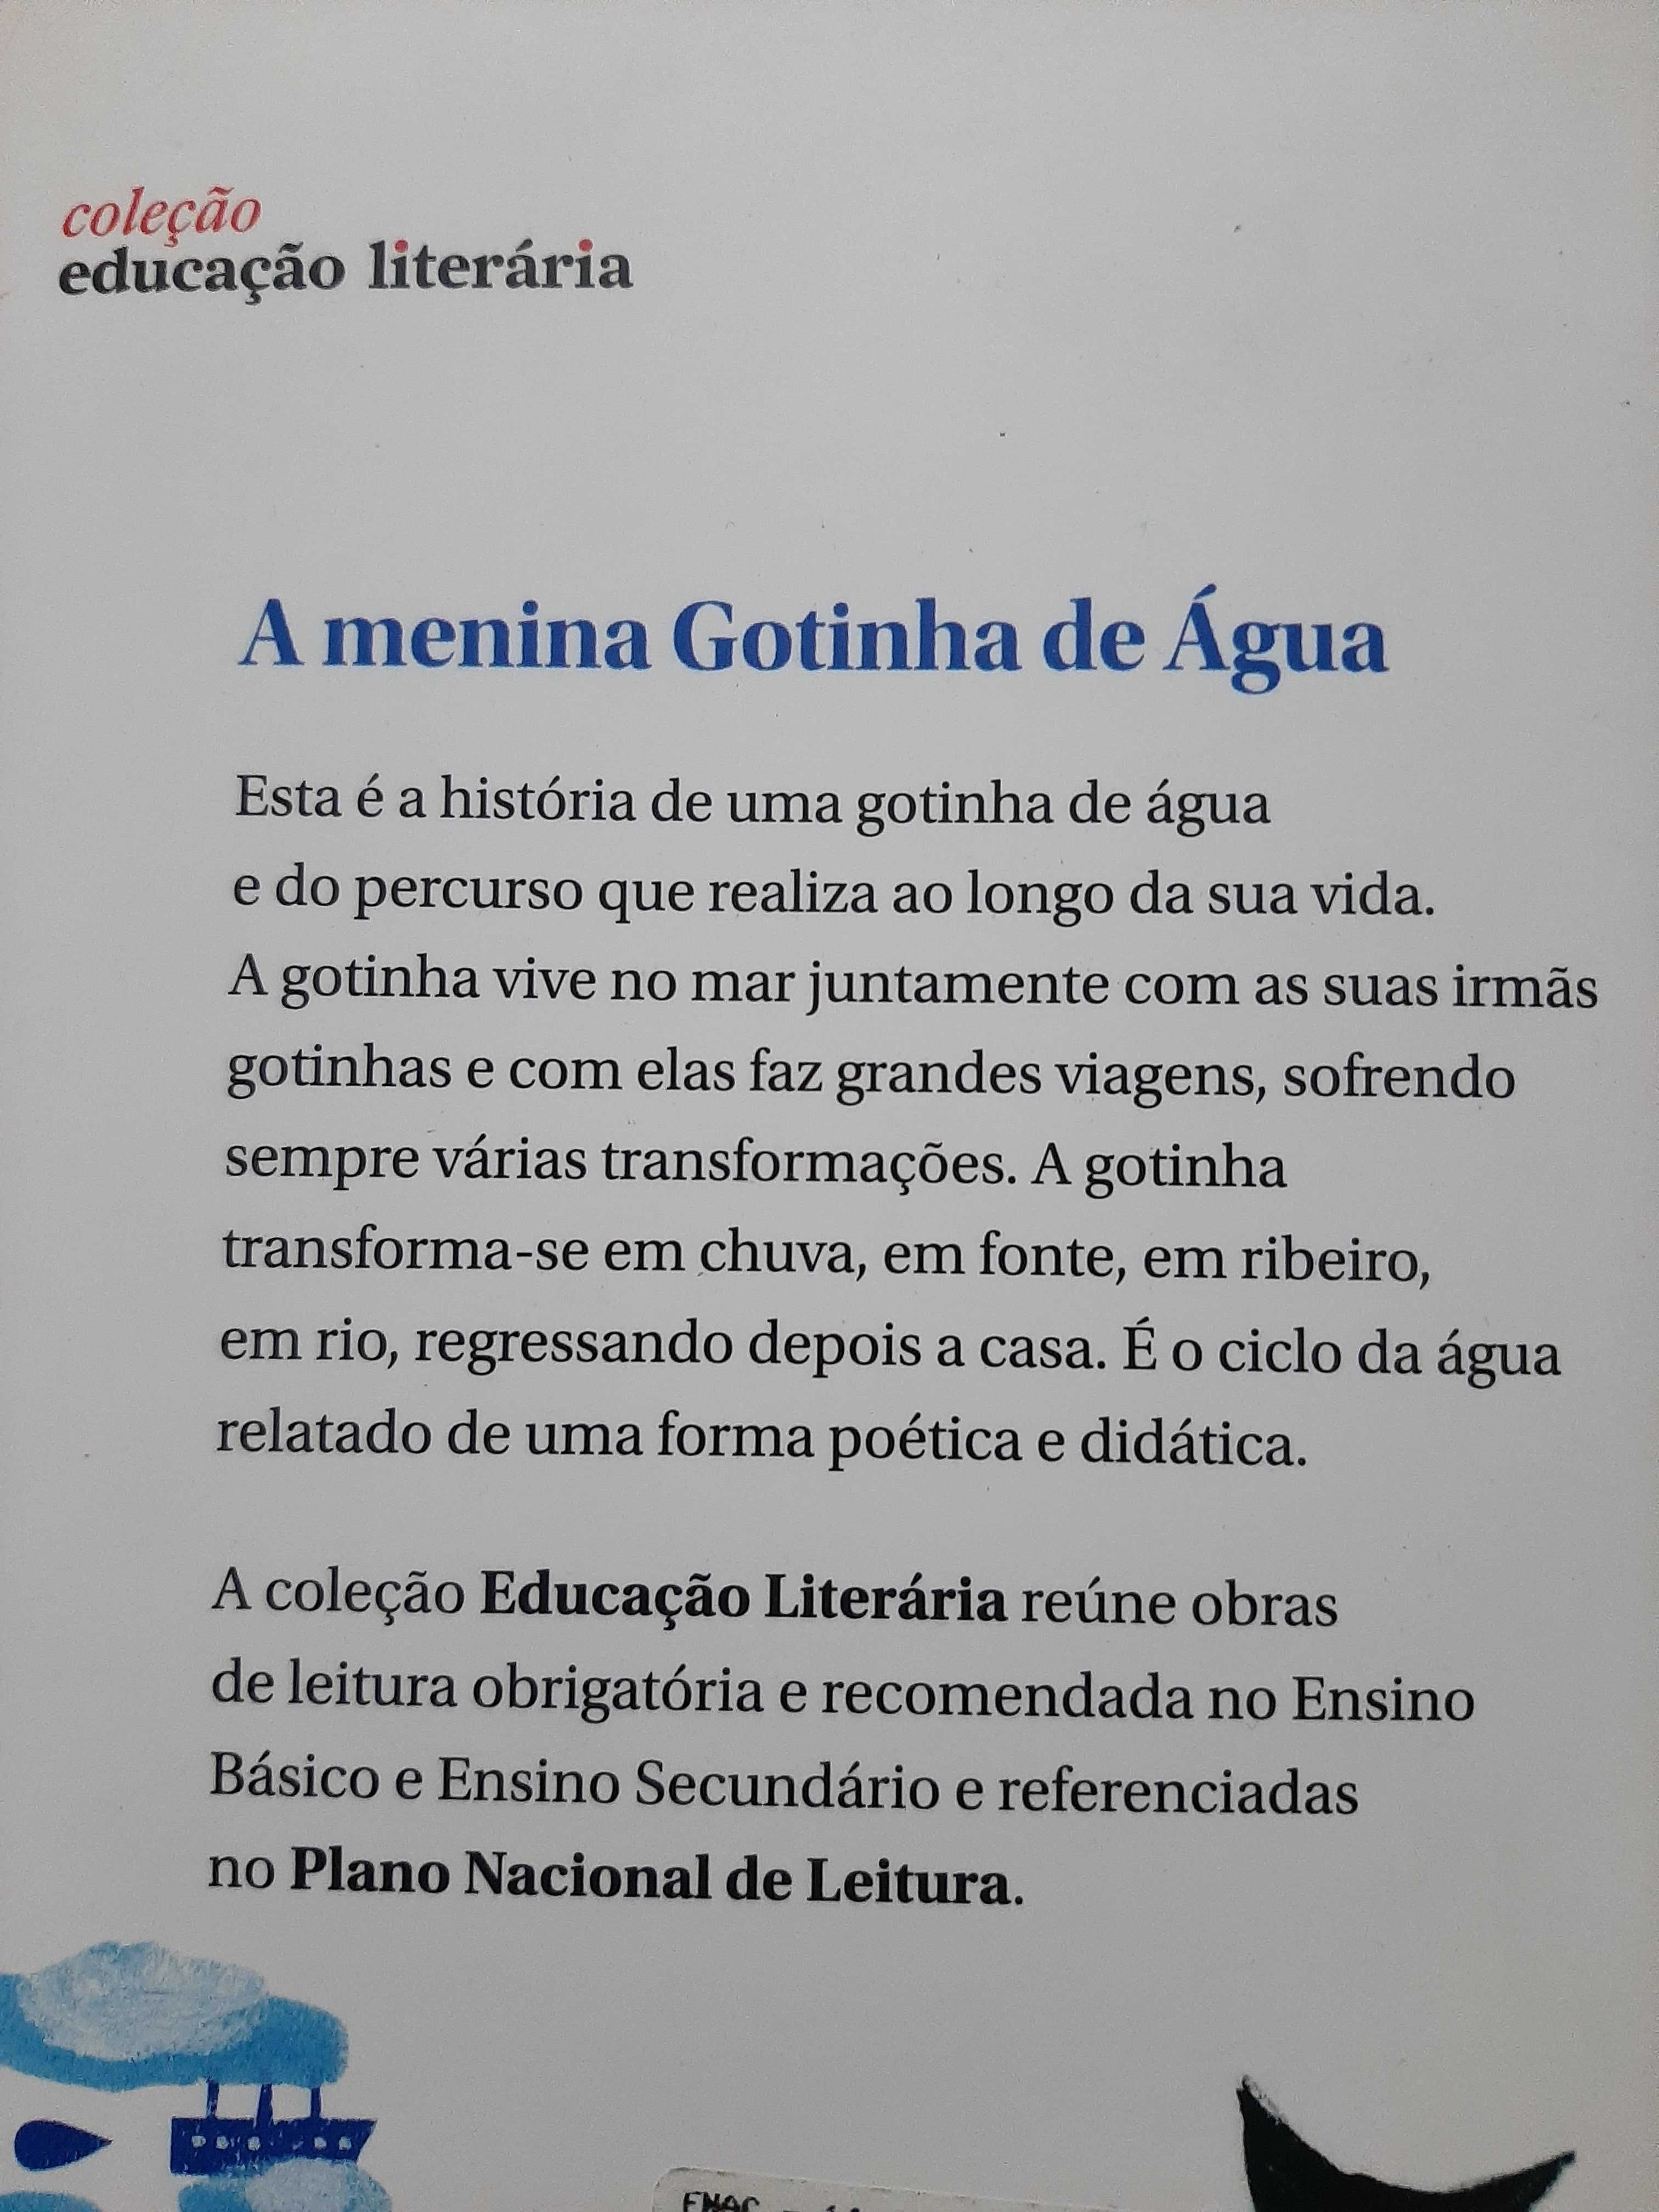 Livro "A menina Gotinha de Água"